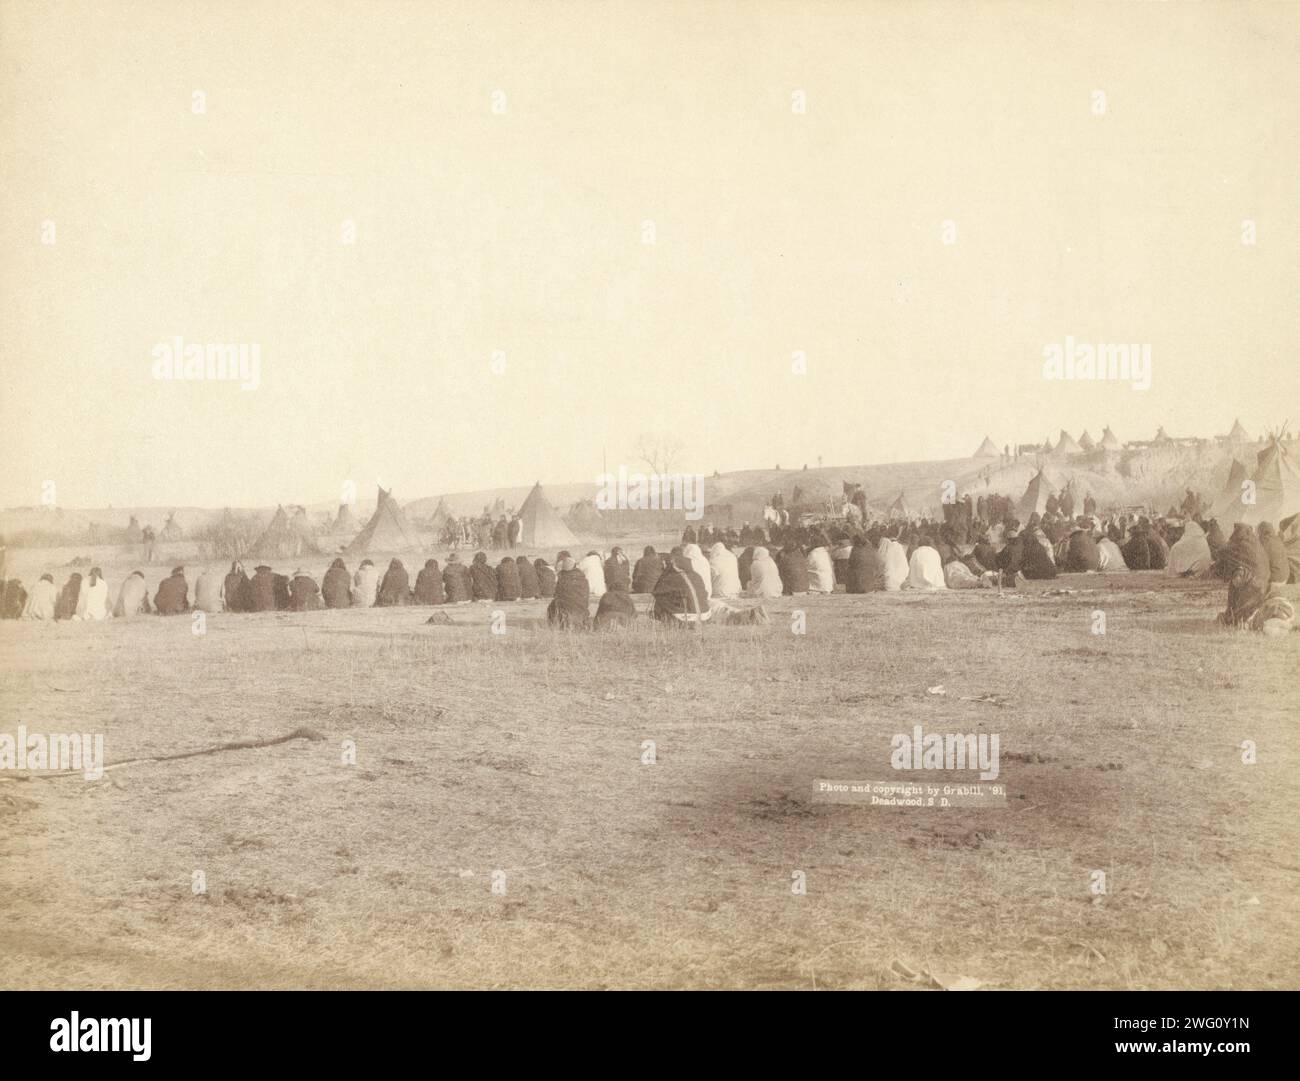 Indianerrat im feindlichen Lager, 1891. Rückansicht eines großen Halbkreises von Lakota-Männern, die auf dem Boden sitzen, mit Tipis im Hintergrund, wahrscheinlich auf oder in der Nähe des Pine Ridge Reservation. Stockfoto